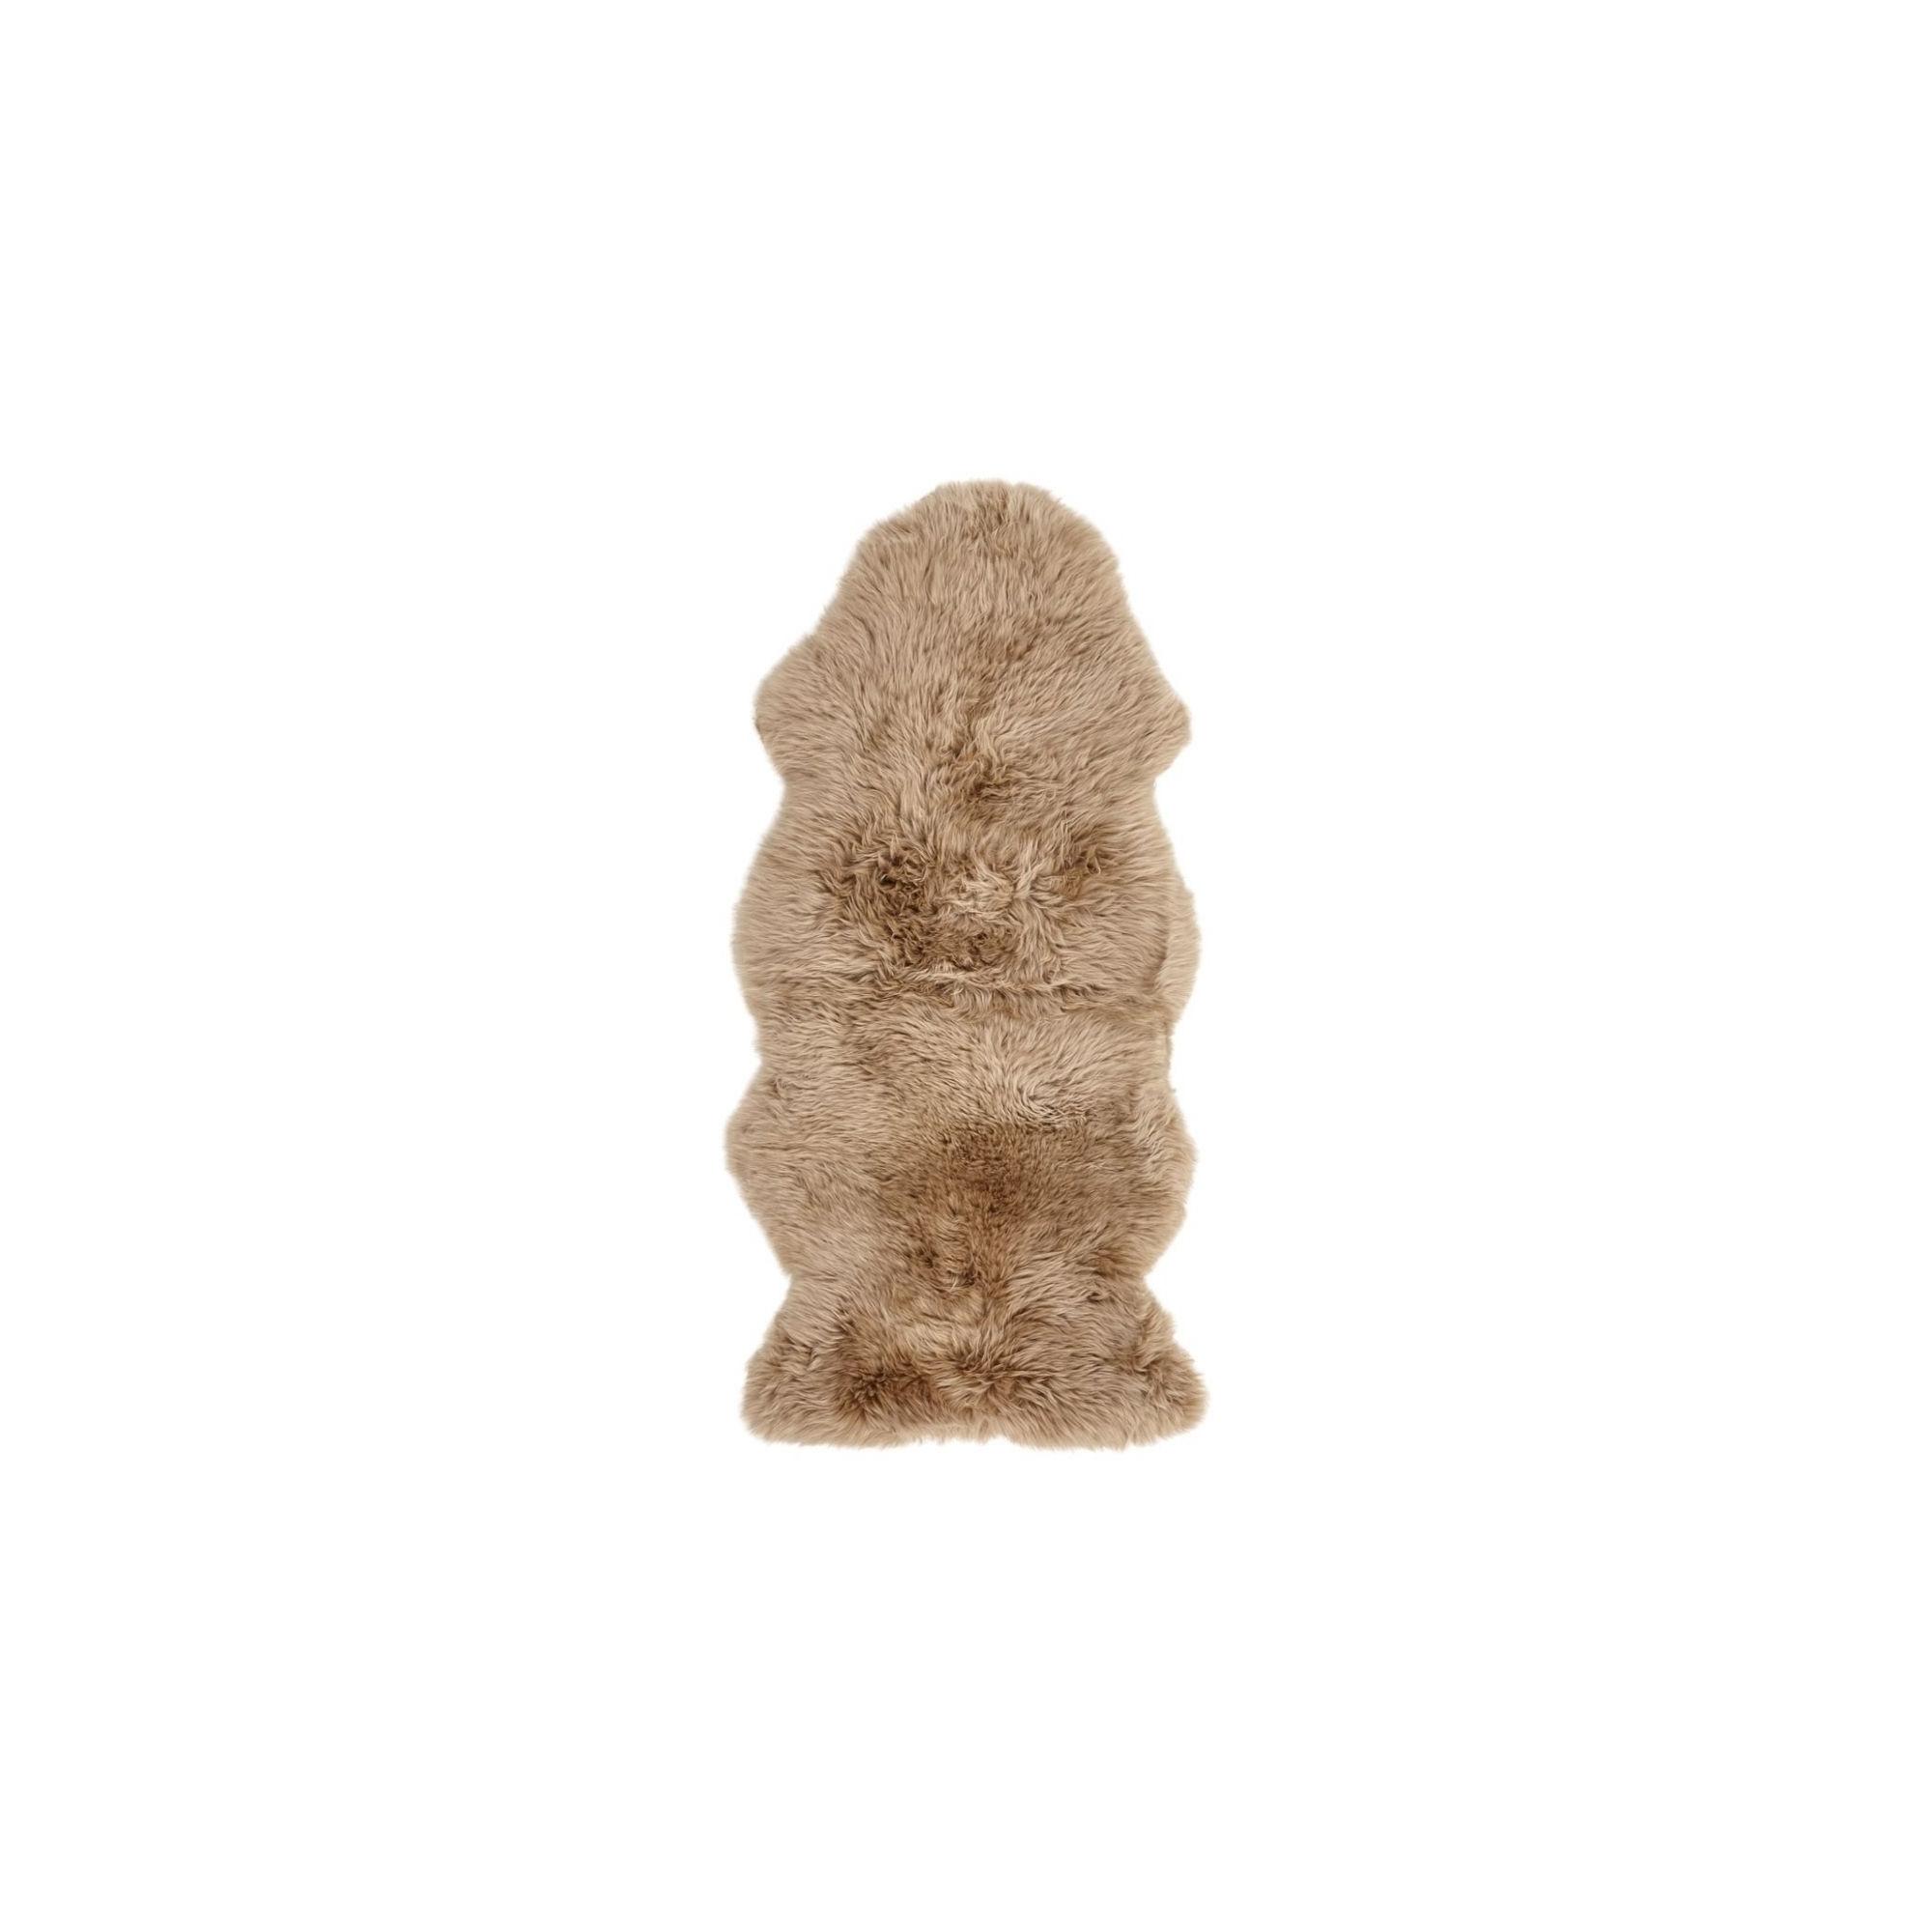  Newzealandsk Fåreskind 135 cm, Long Wool fra Natures Collection (Varenr: NCL1023)